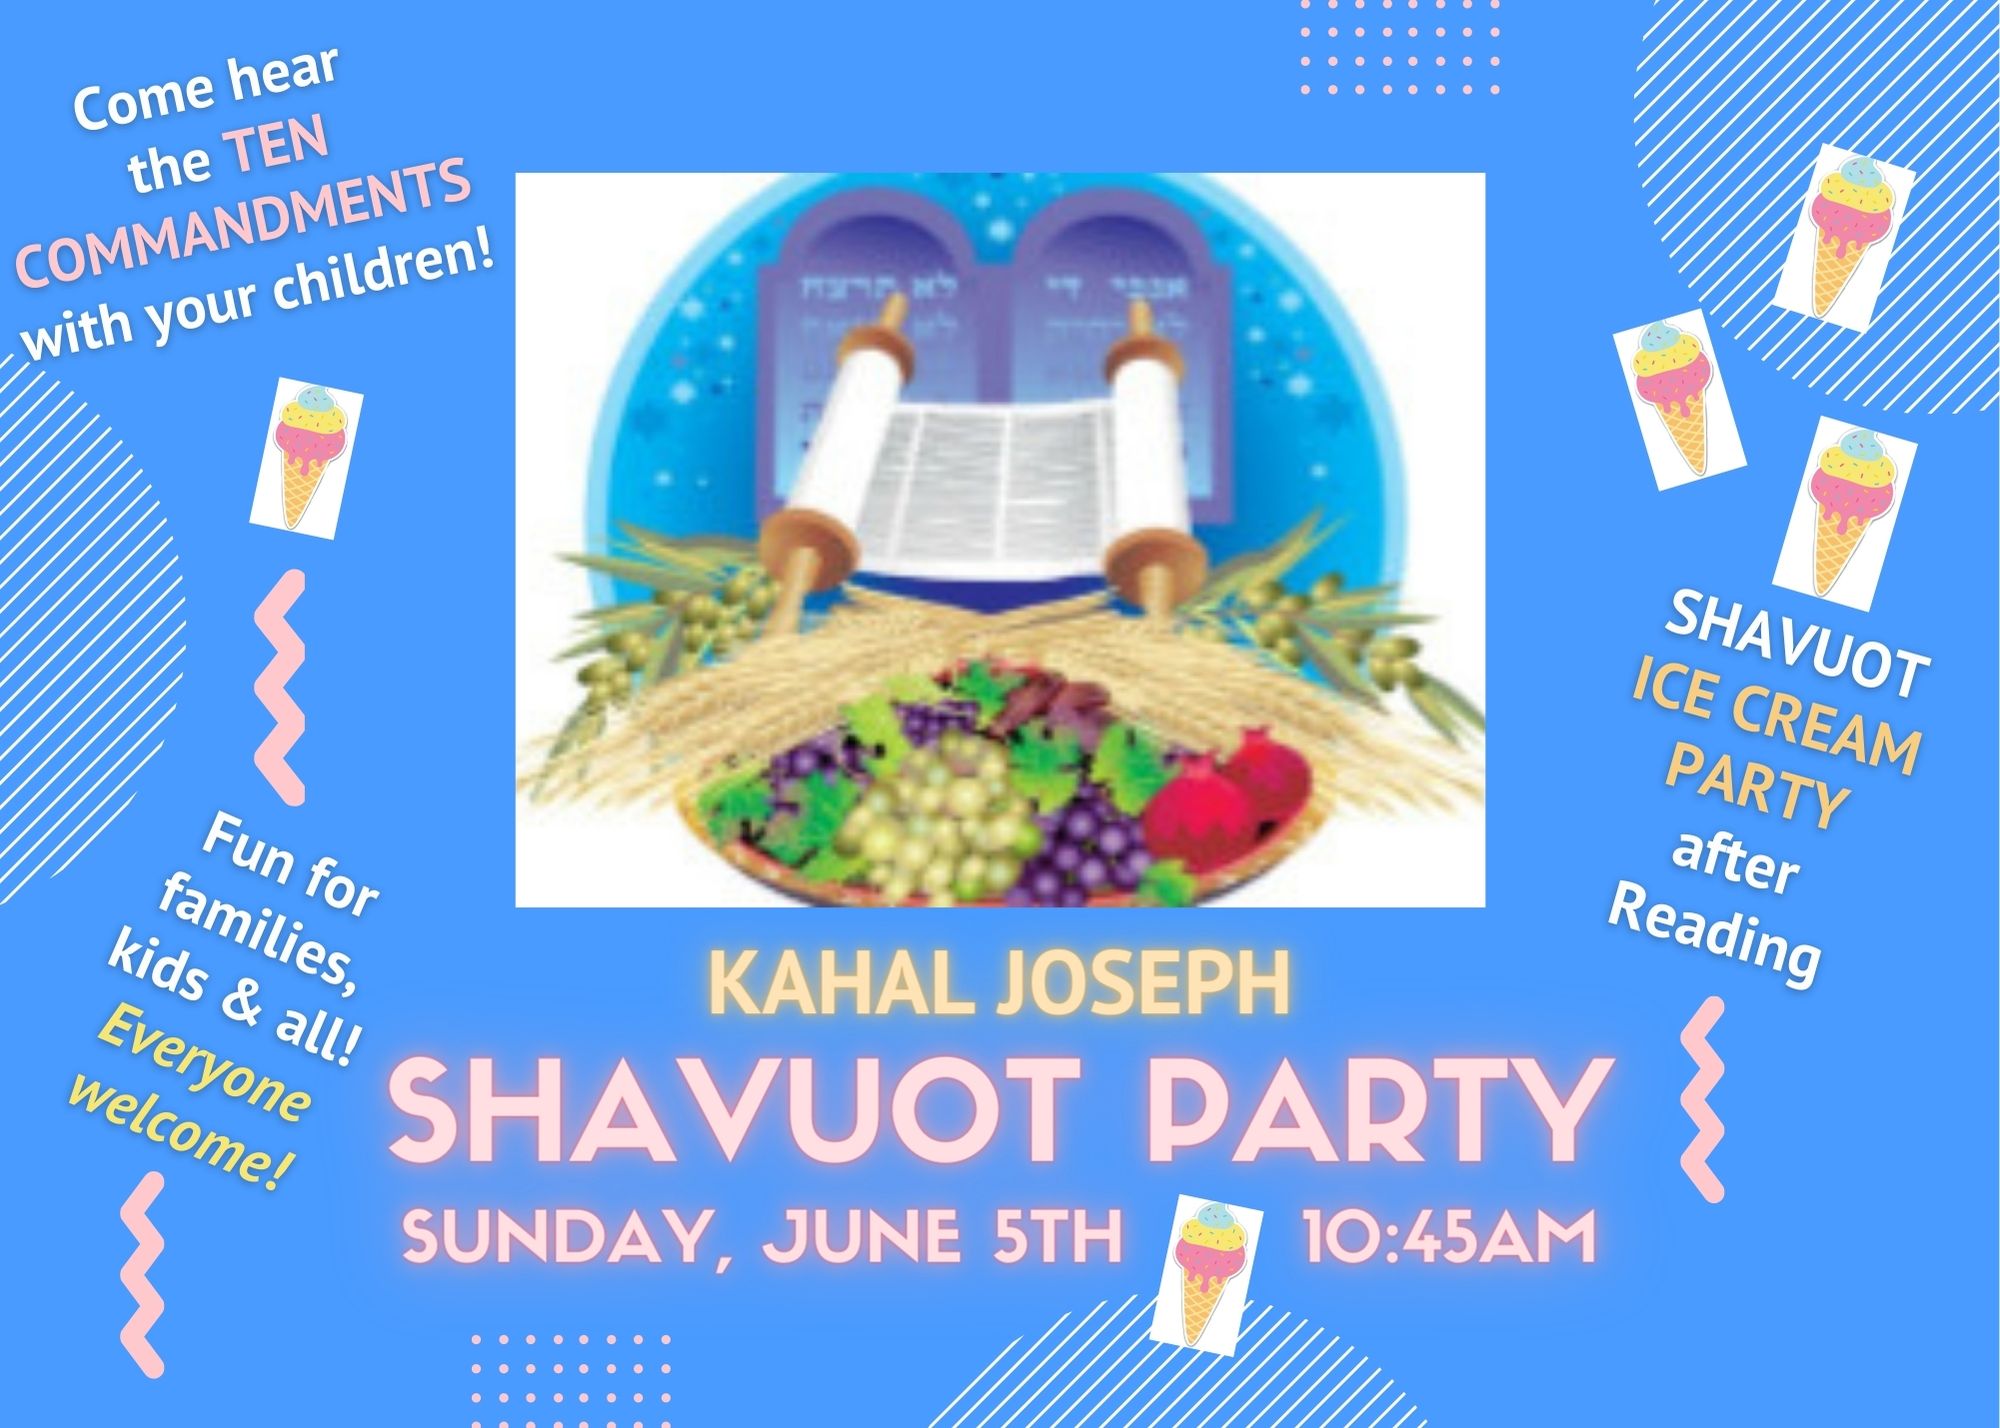 Shavuot Holiday at KJ